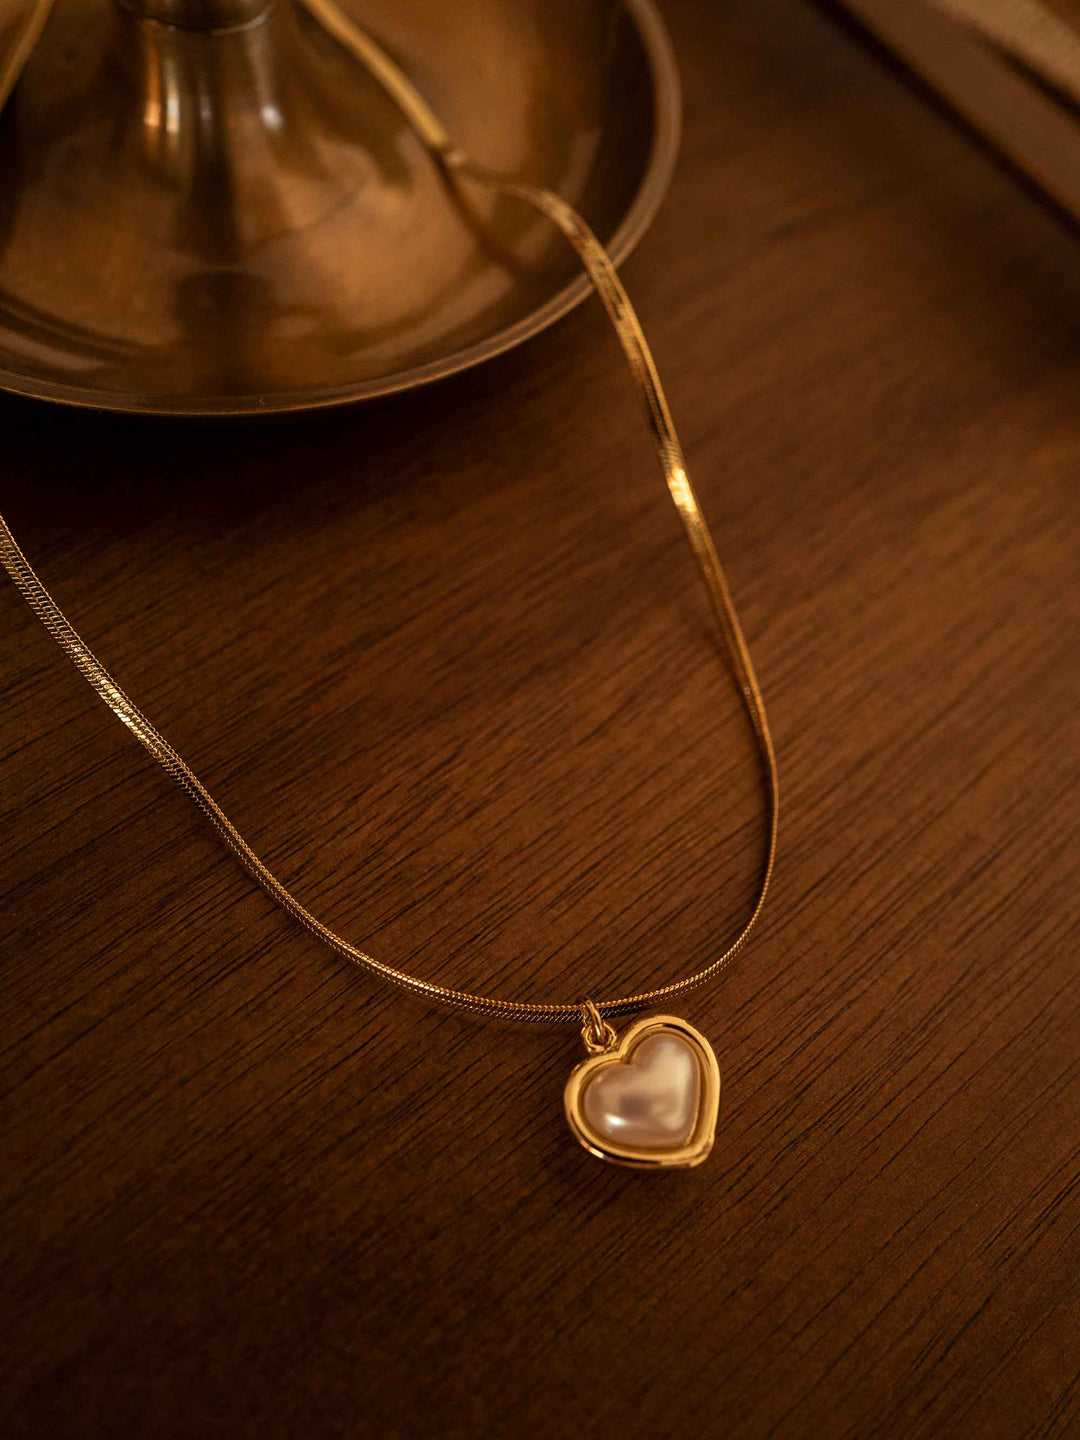 A love pendant necklace